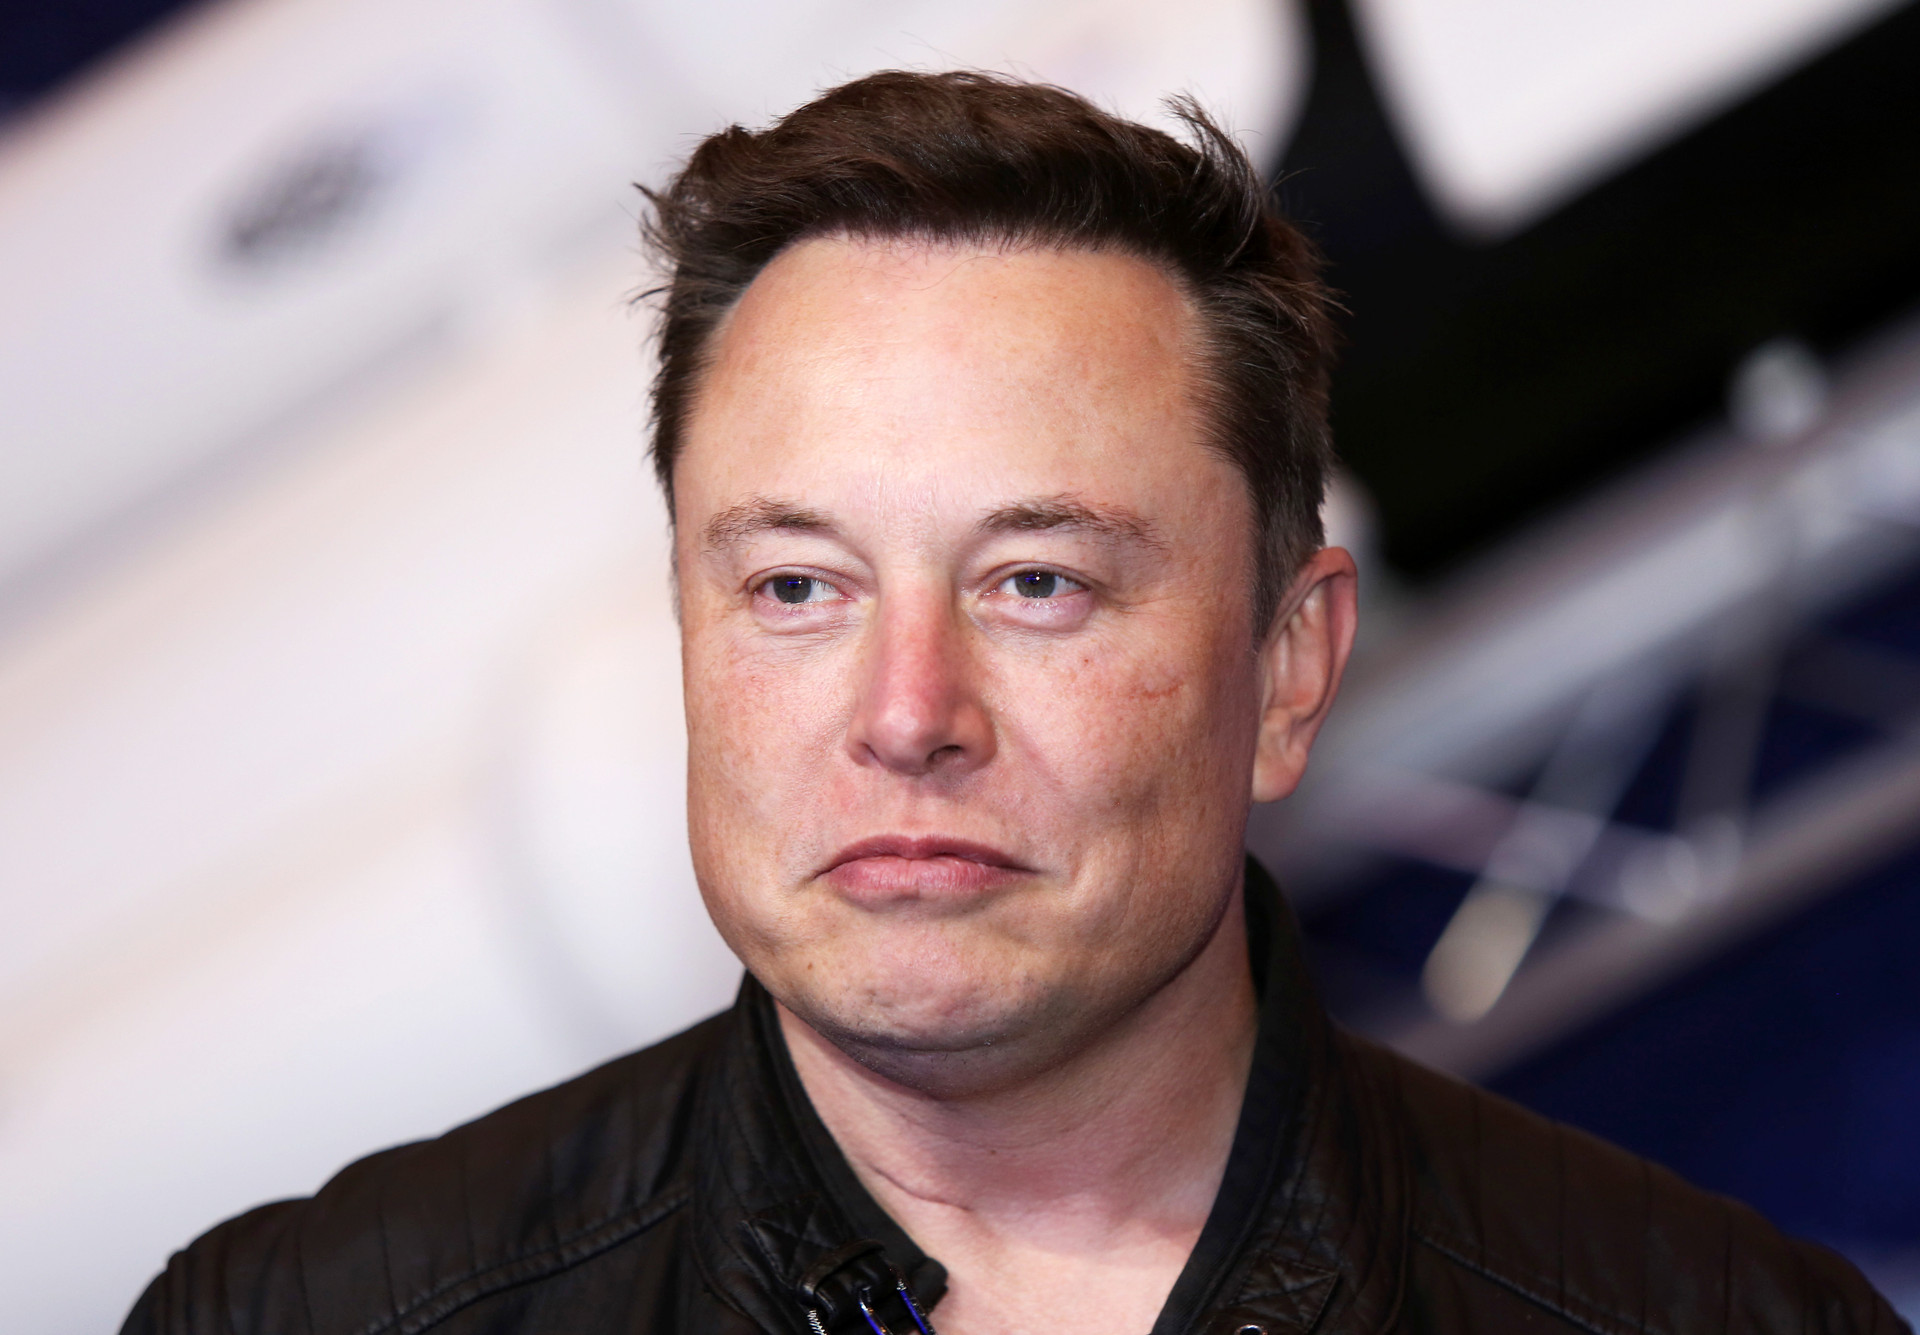 Buồn của Elon Musk: Là người duy nhất trong lịch sử mất 200 tỷ USD tài sản - Ảnh 1.